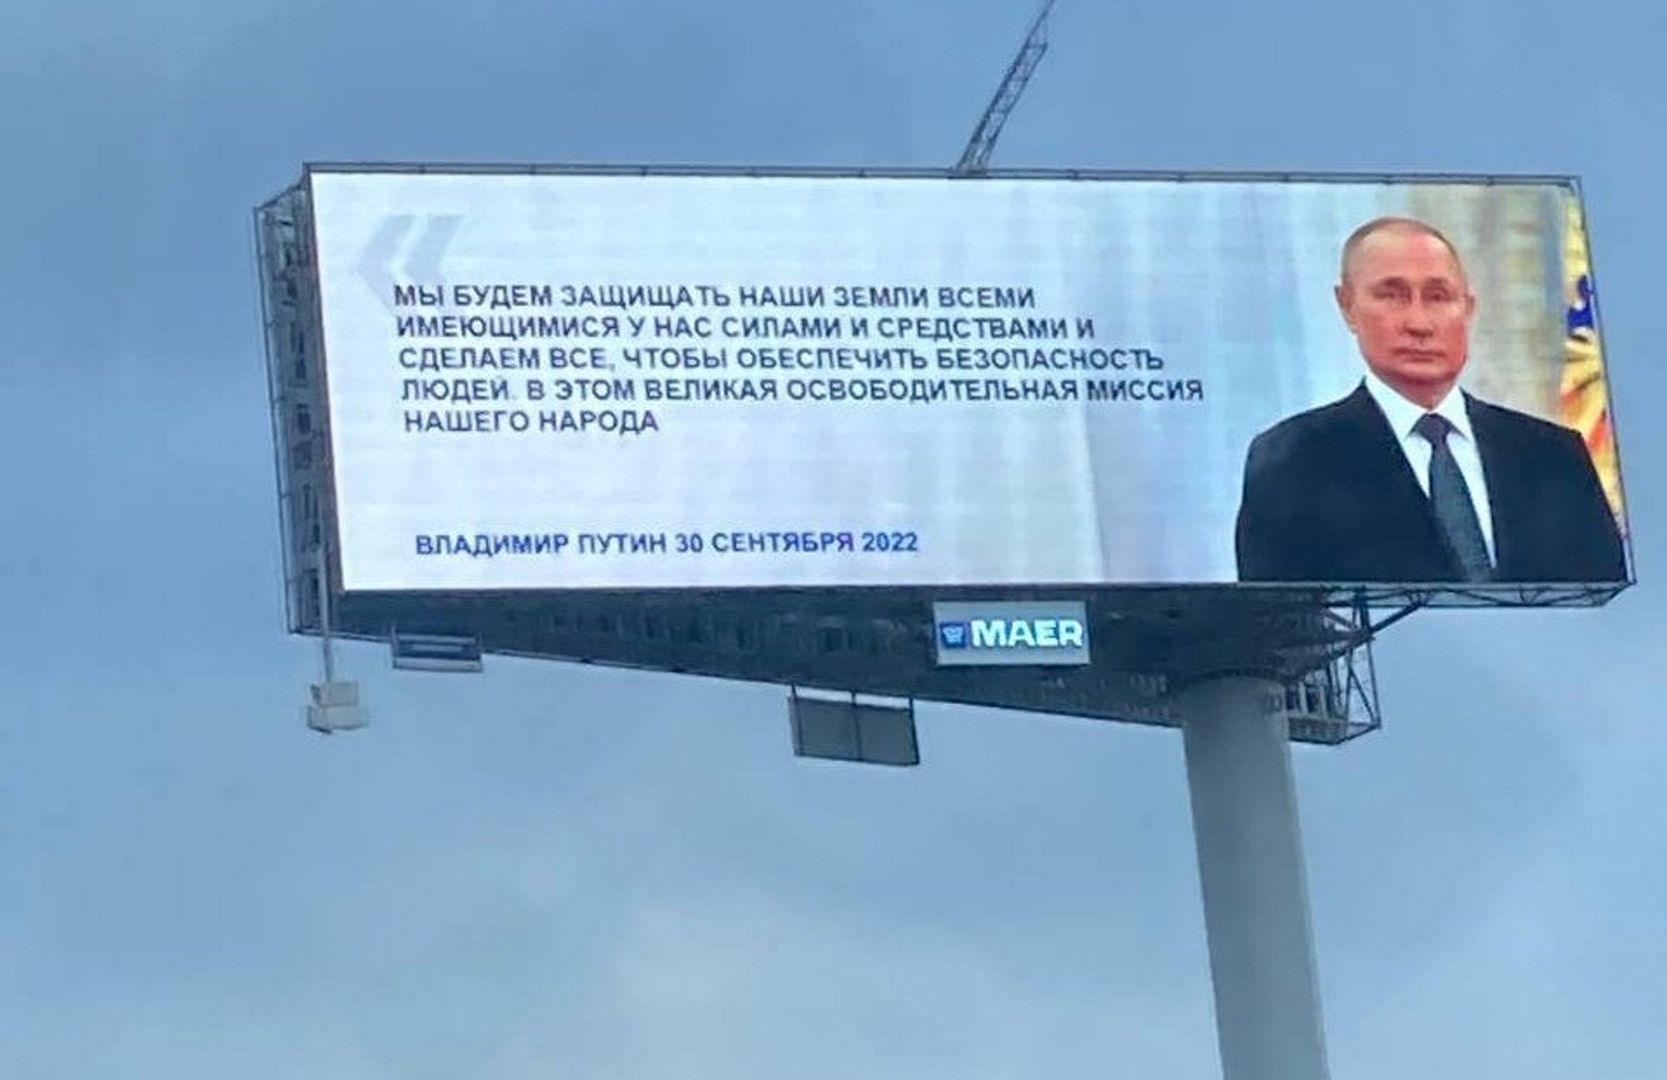 Propaganda Putina nie zna granic. Taki billboard zawisł w Moskwie